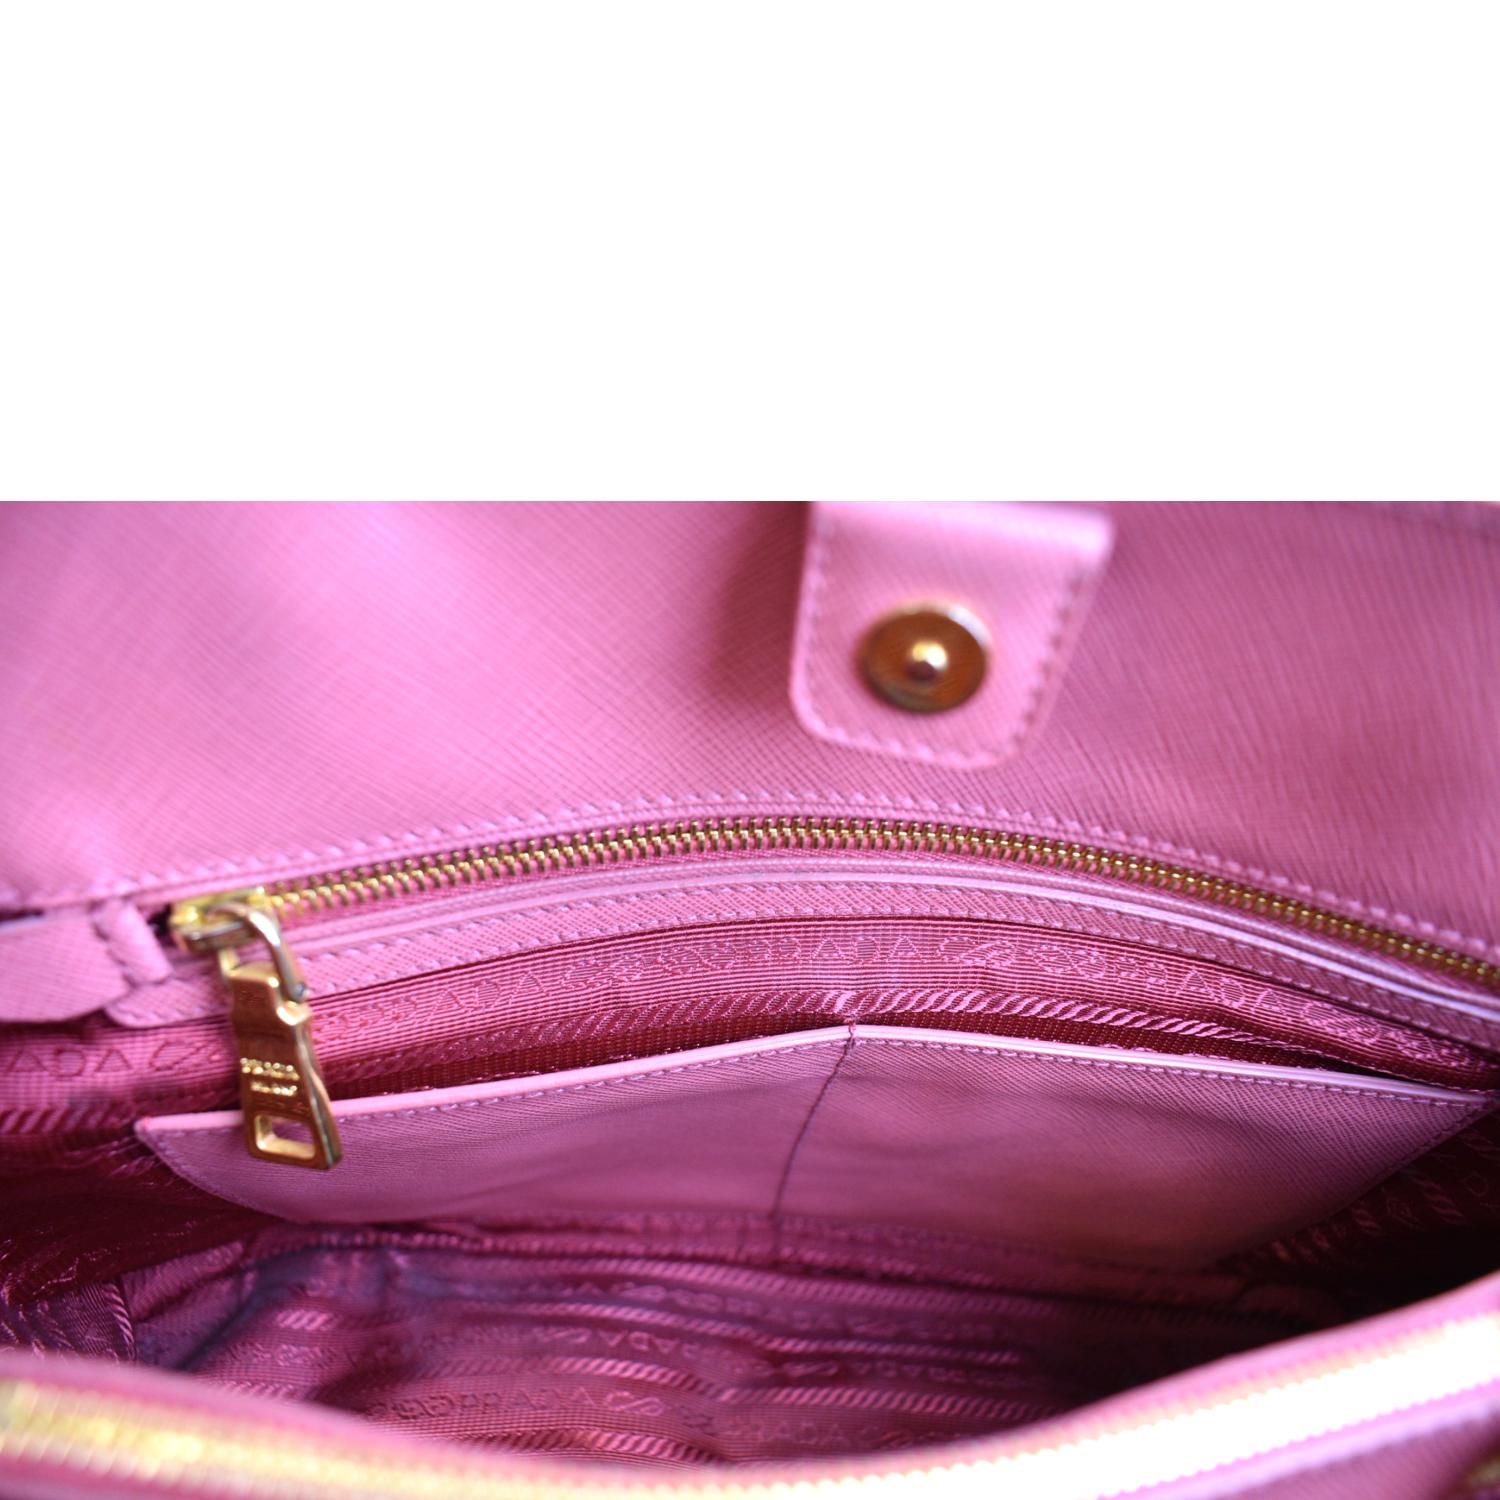 Prada, Bags, Prada Promenade Saffiano Leather Bag Pink